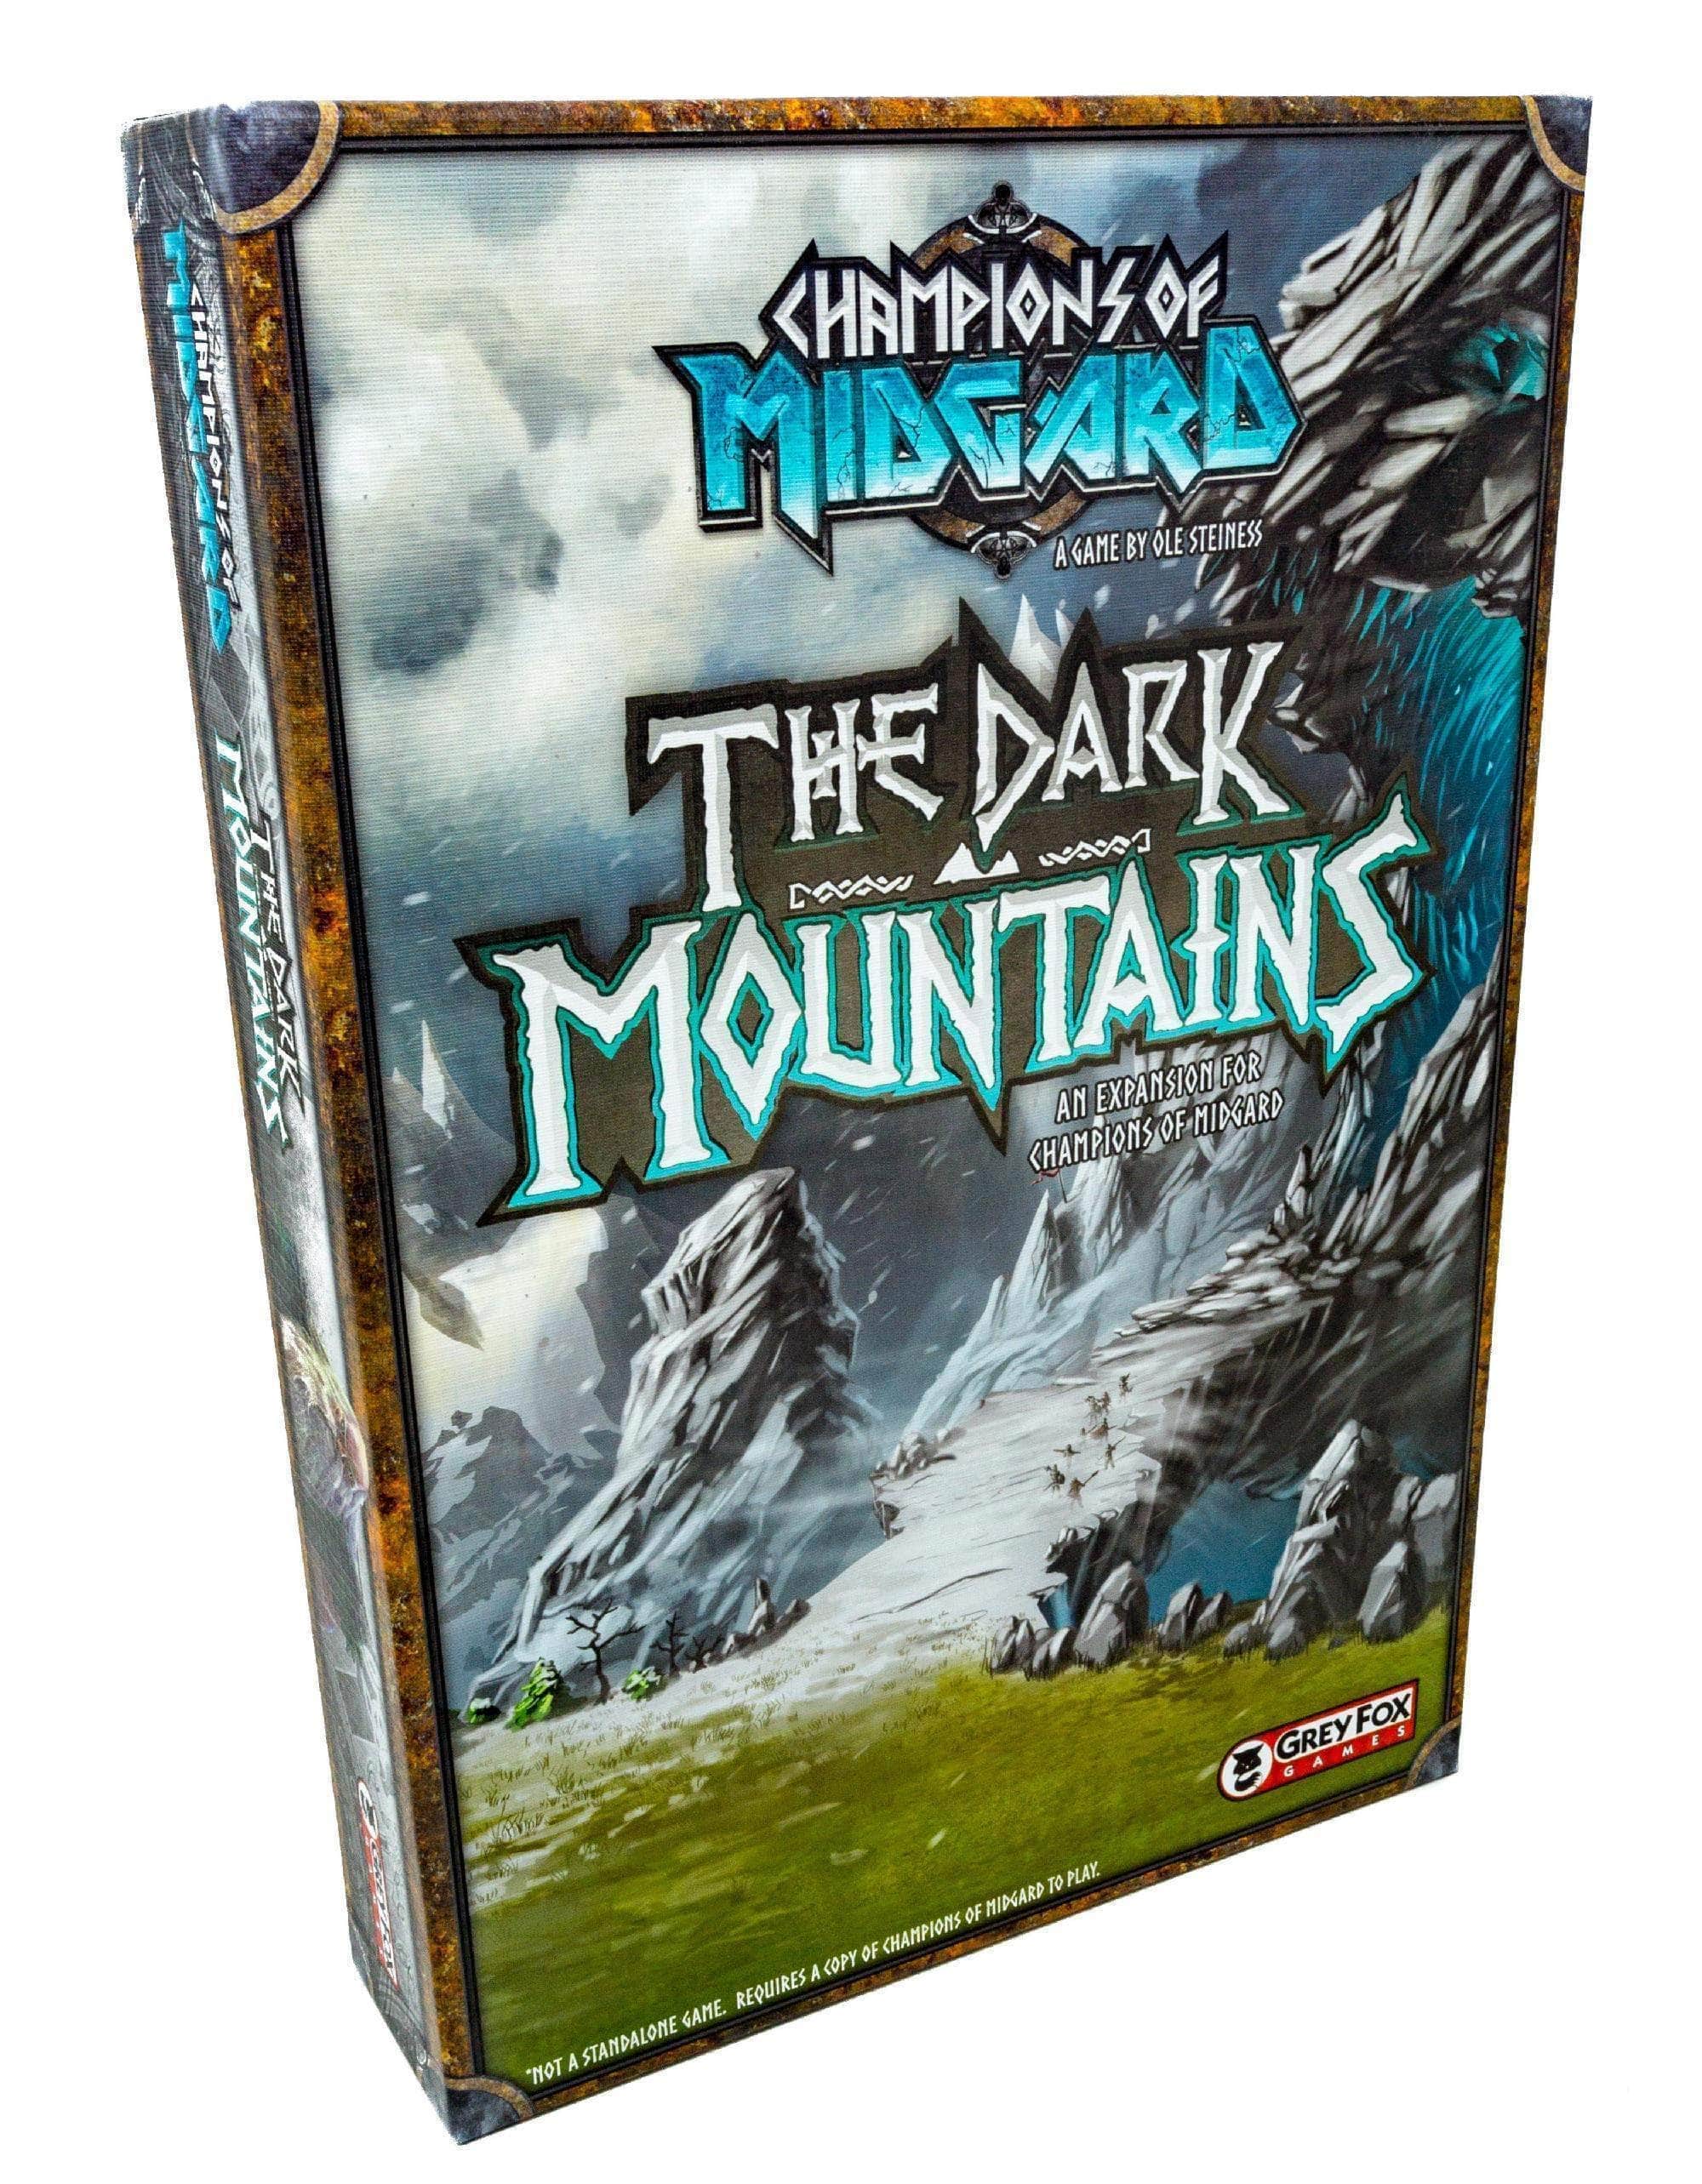 Meister von Midgard: Die Expansion des Dark Mountain Expansion (Einzelhandelsausgabe) für Einzelhandelsbrettspiele Grey Fox Games 616909967469 KS000650Q